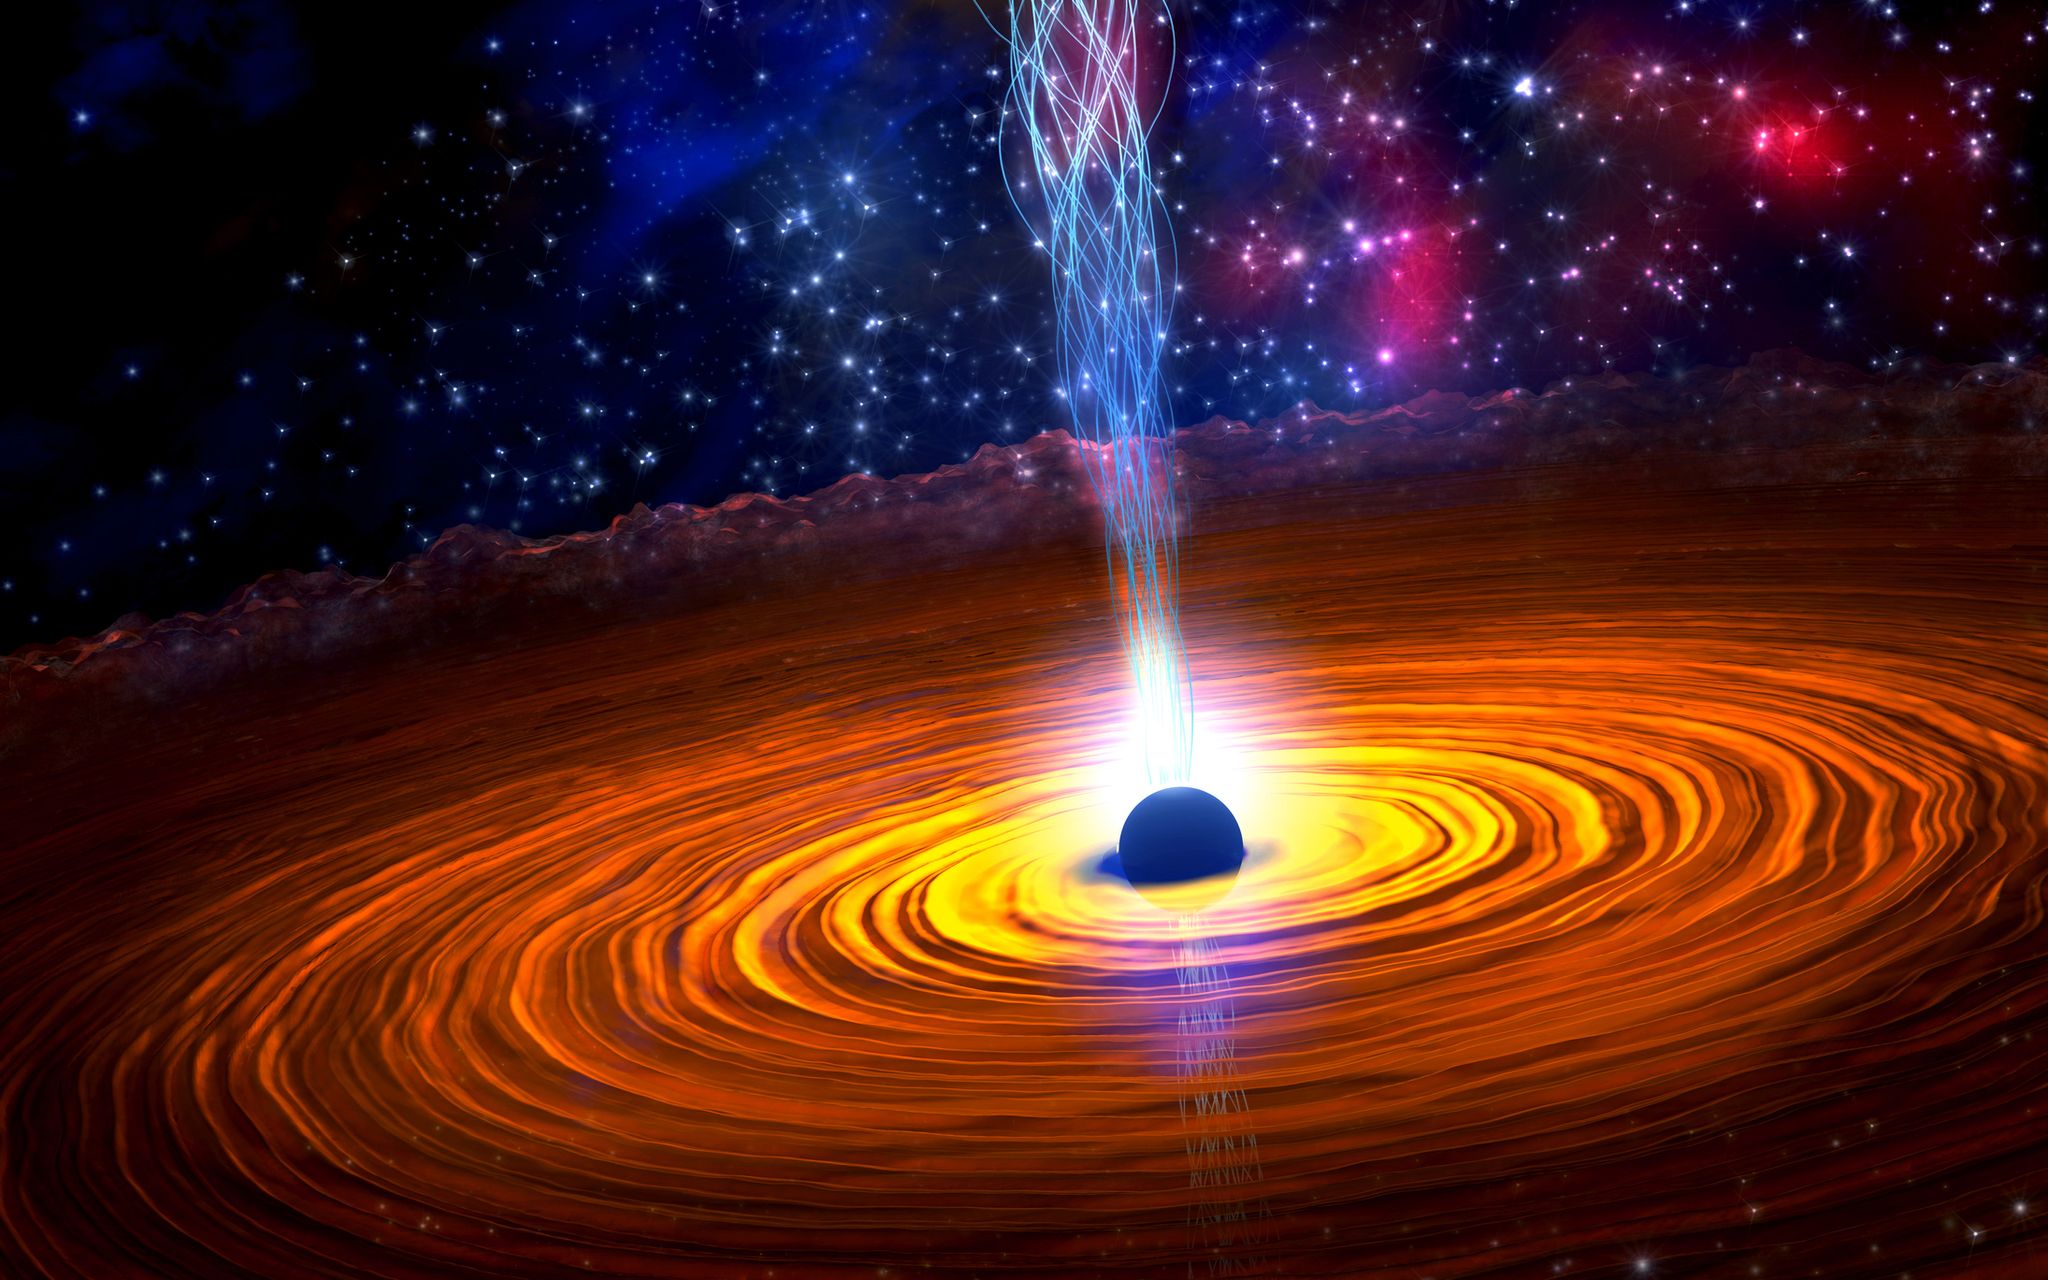 black hole created after supernova, illustration